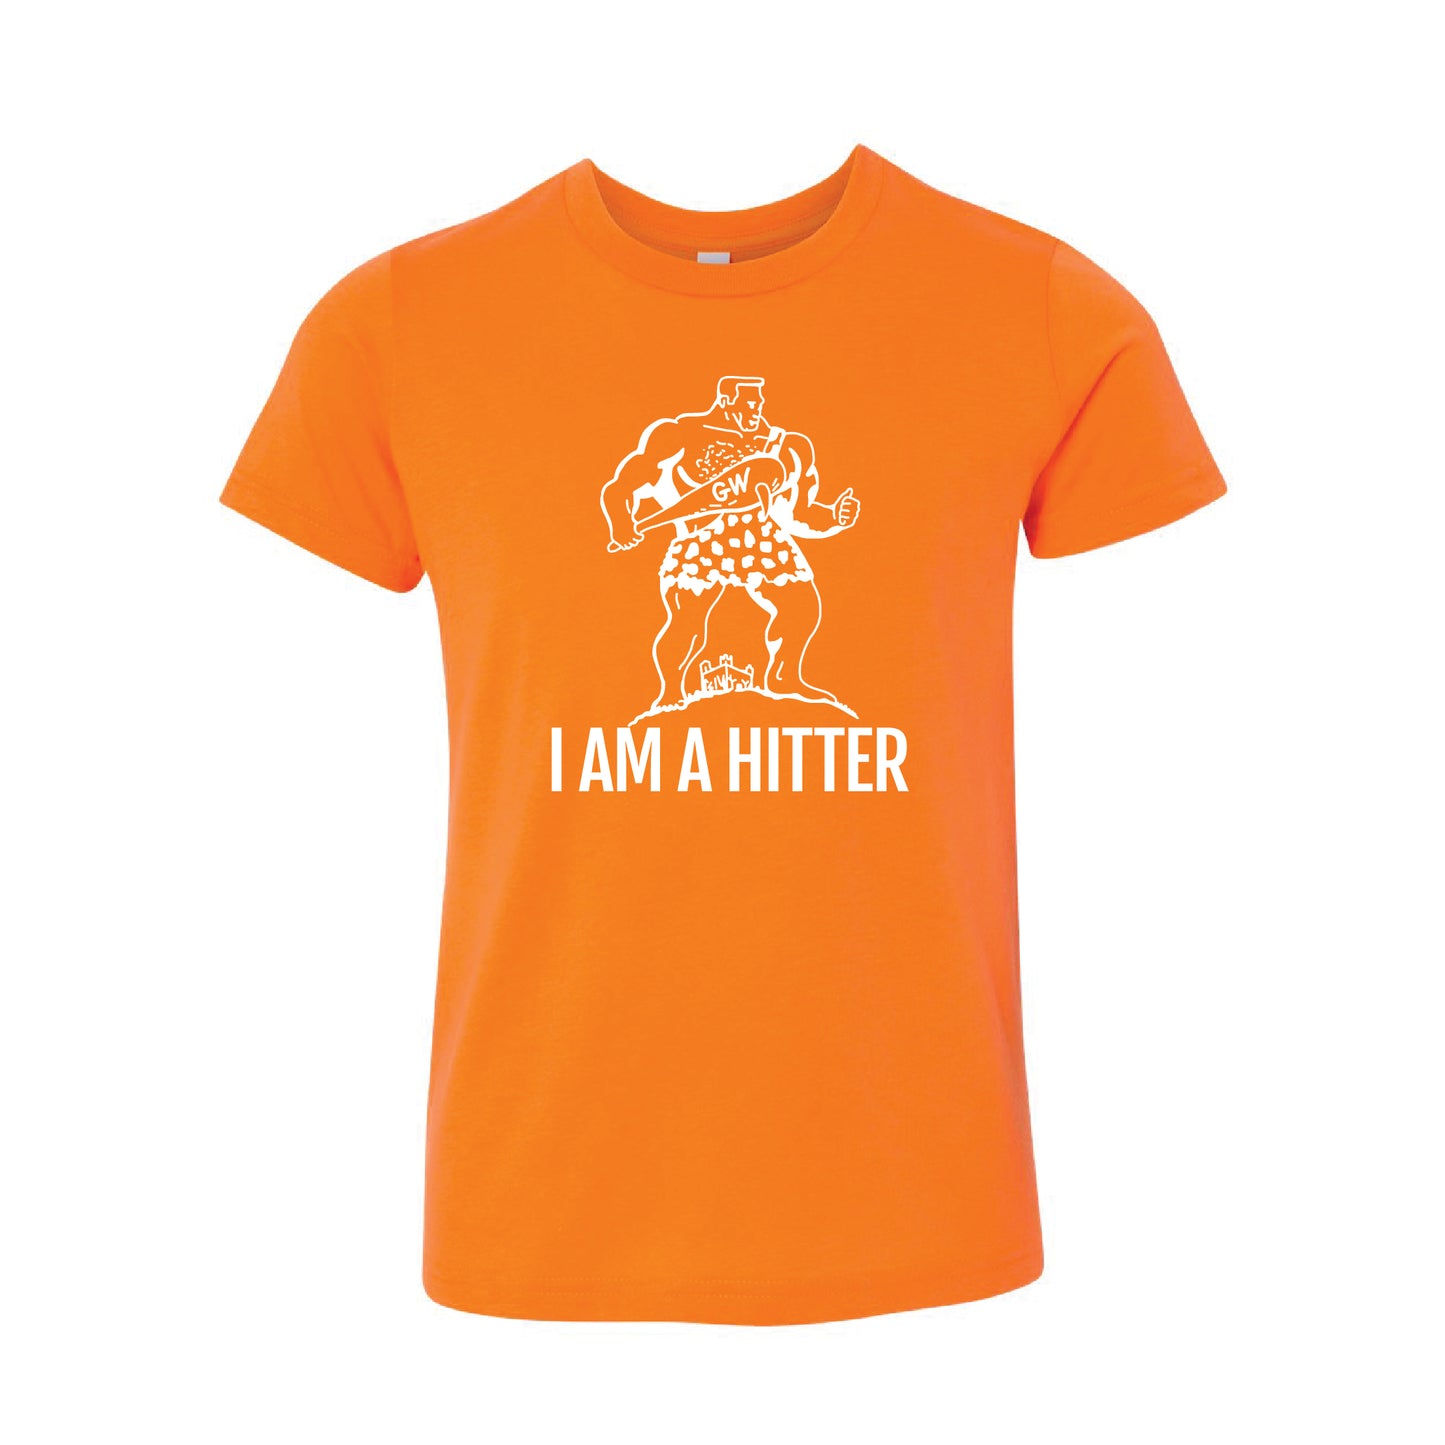 I'm a Hitter Youth Boys T-Shirt